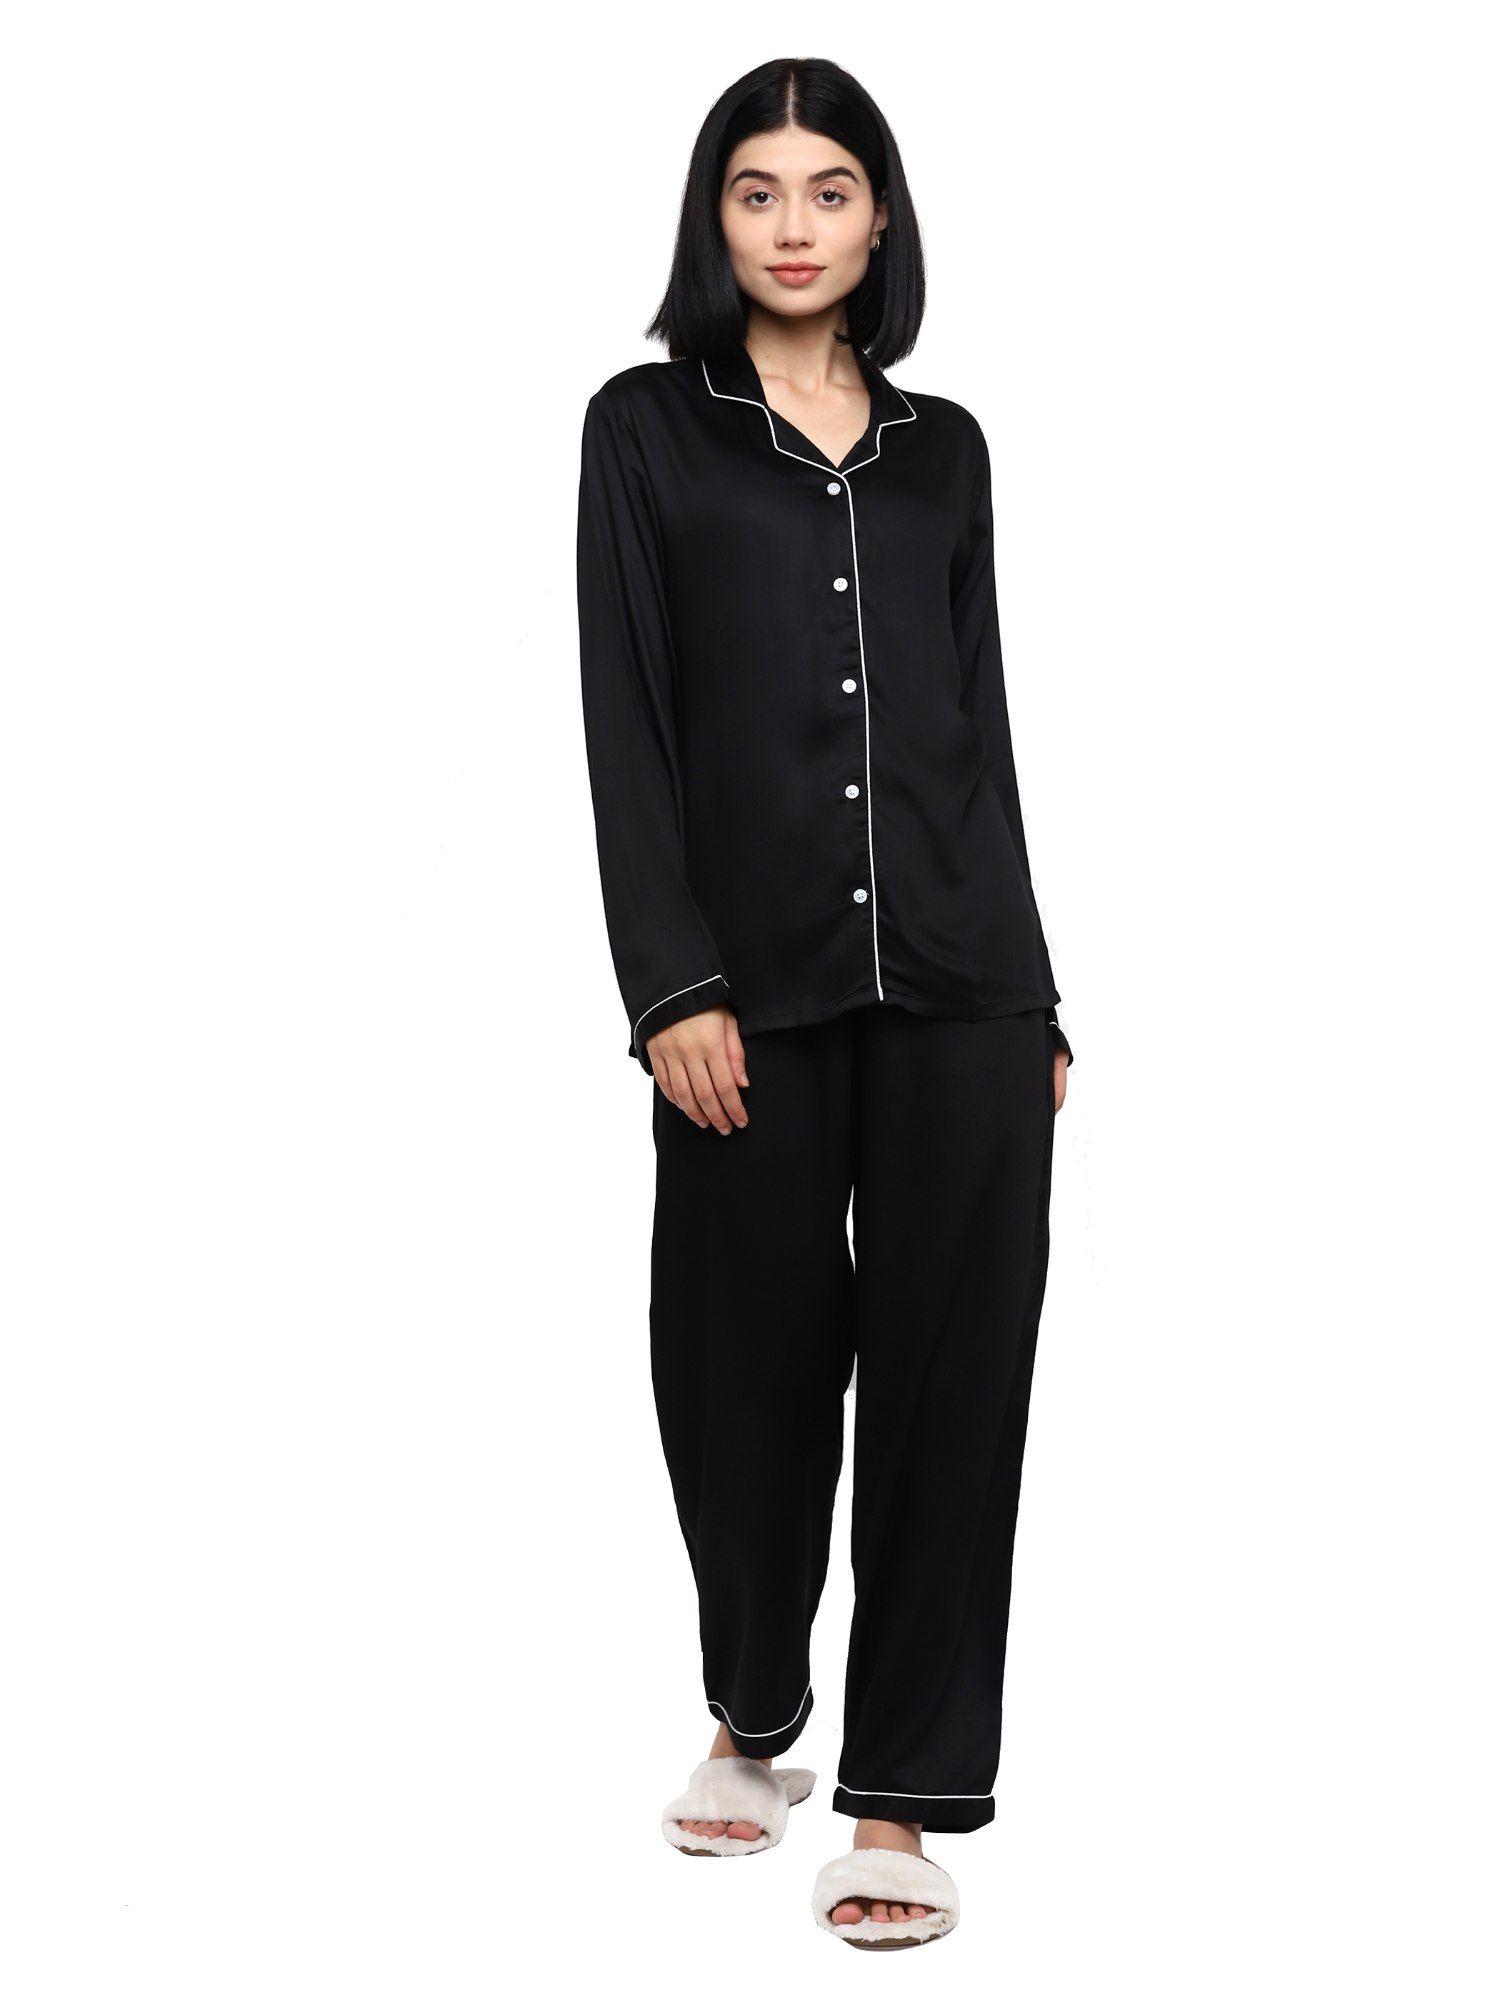 Ultra Soft Black Modal Satin Long Sleeve Women's Night Suit |Lounge Wear